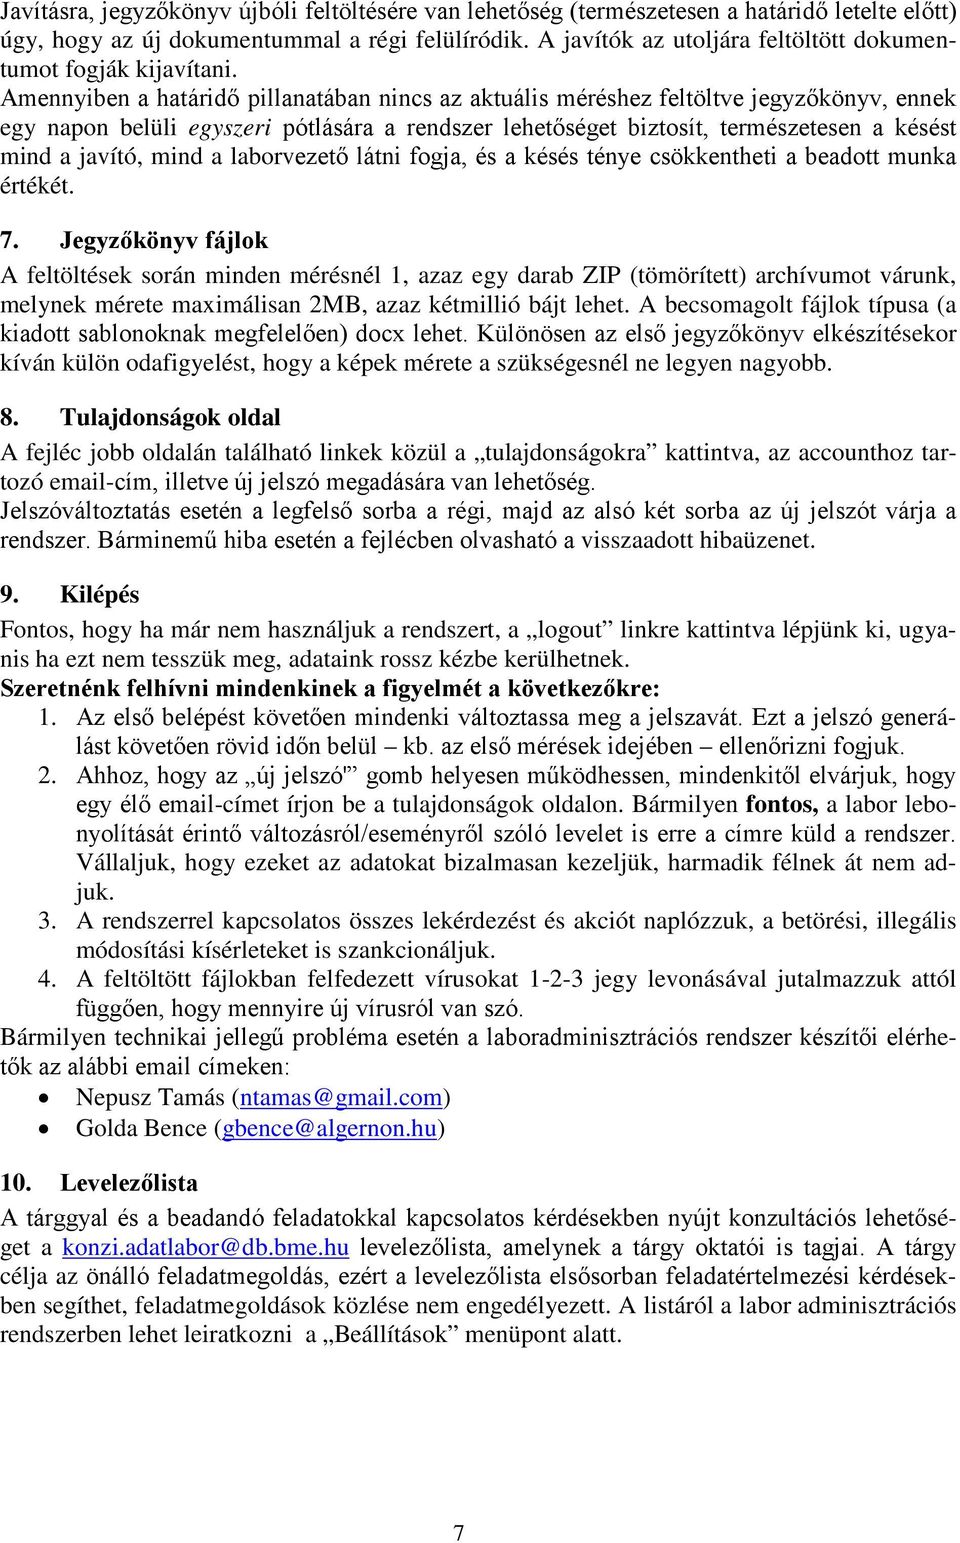 ADATBÁZISOK LABORATÓRIUM - PDF Ingyenes letöltés